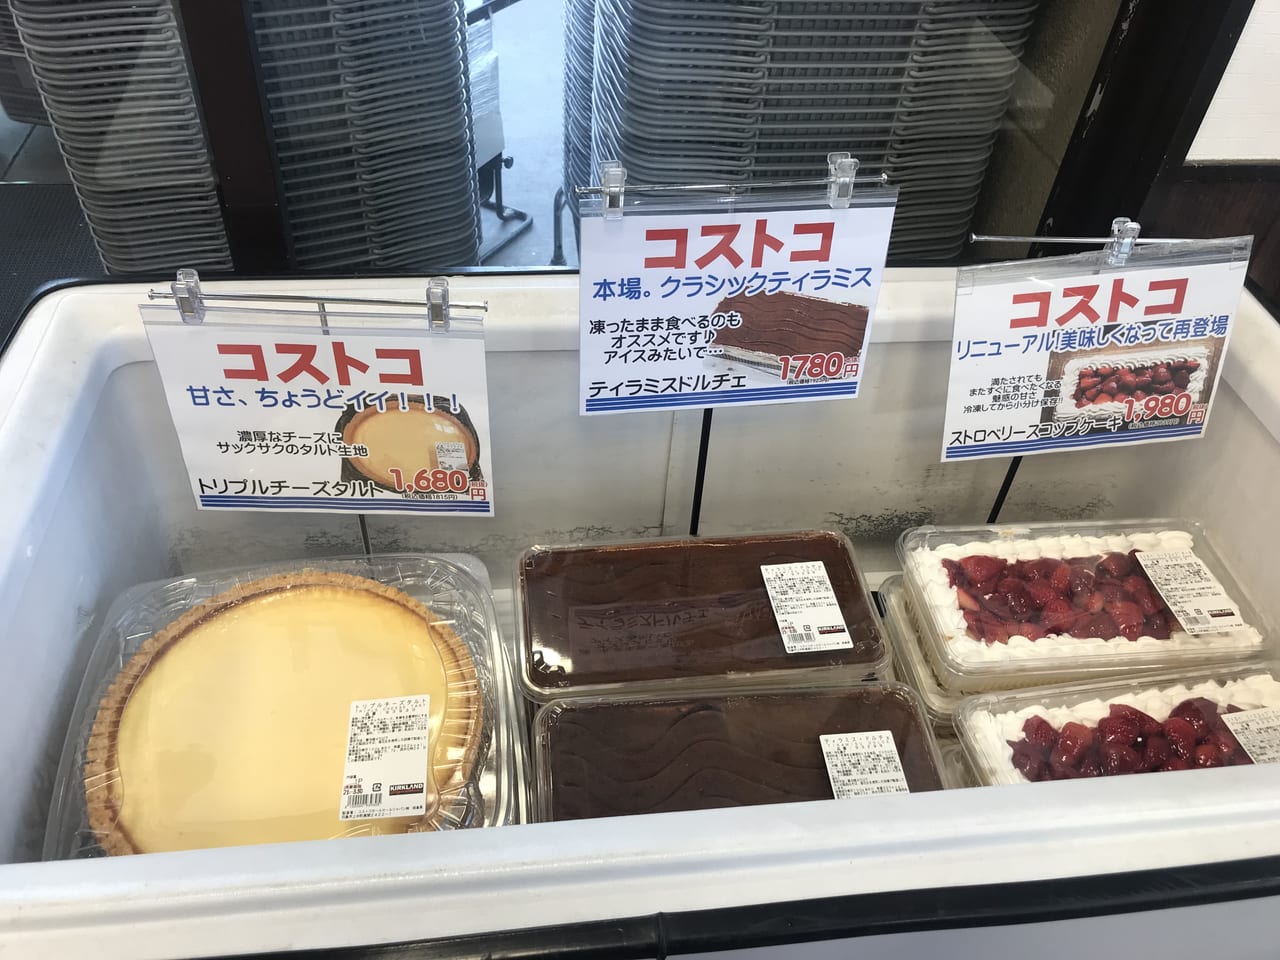 アメリカンサイズのケーキ